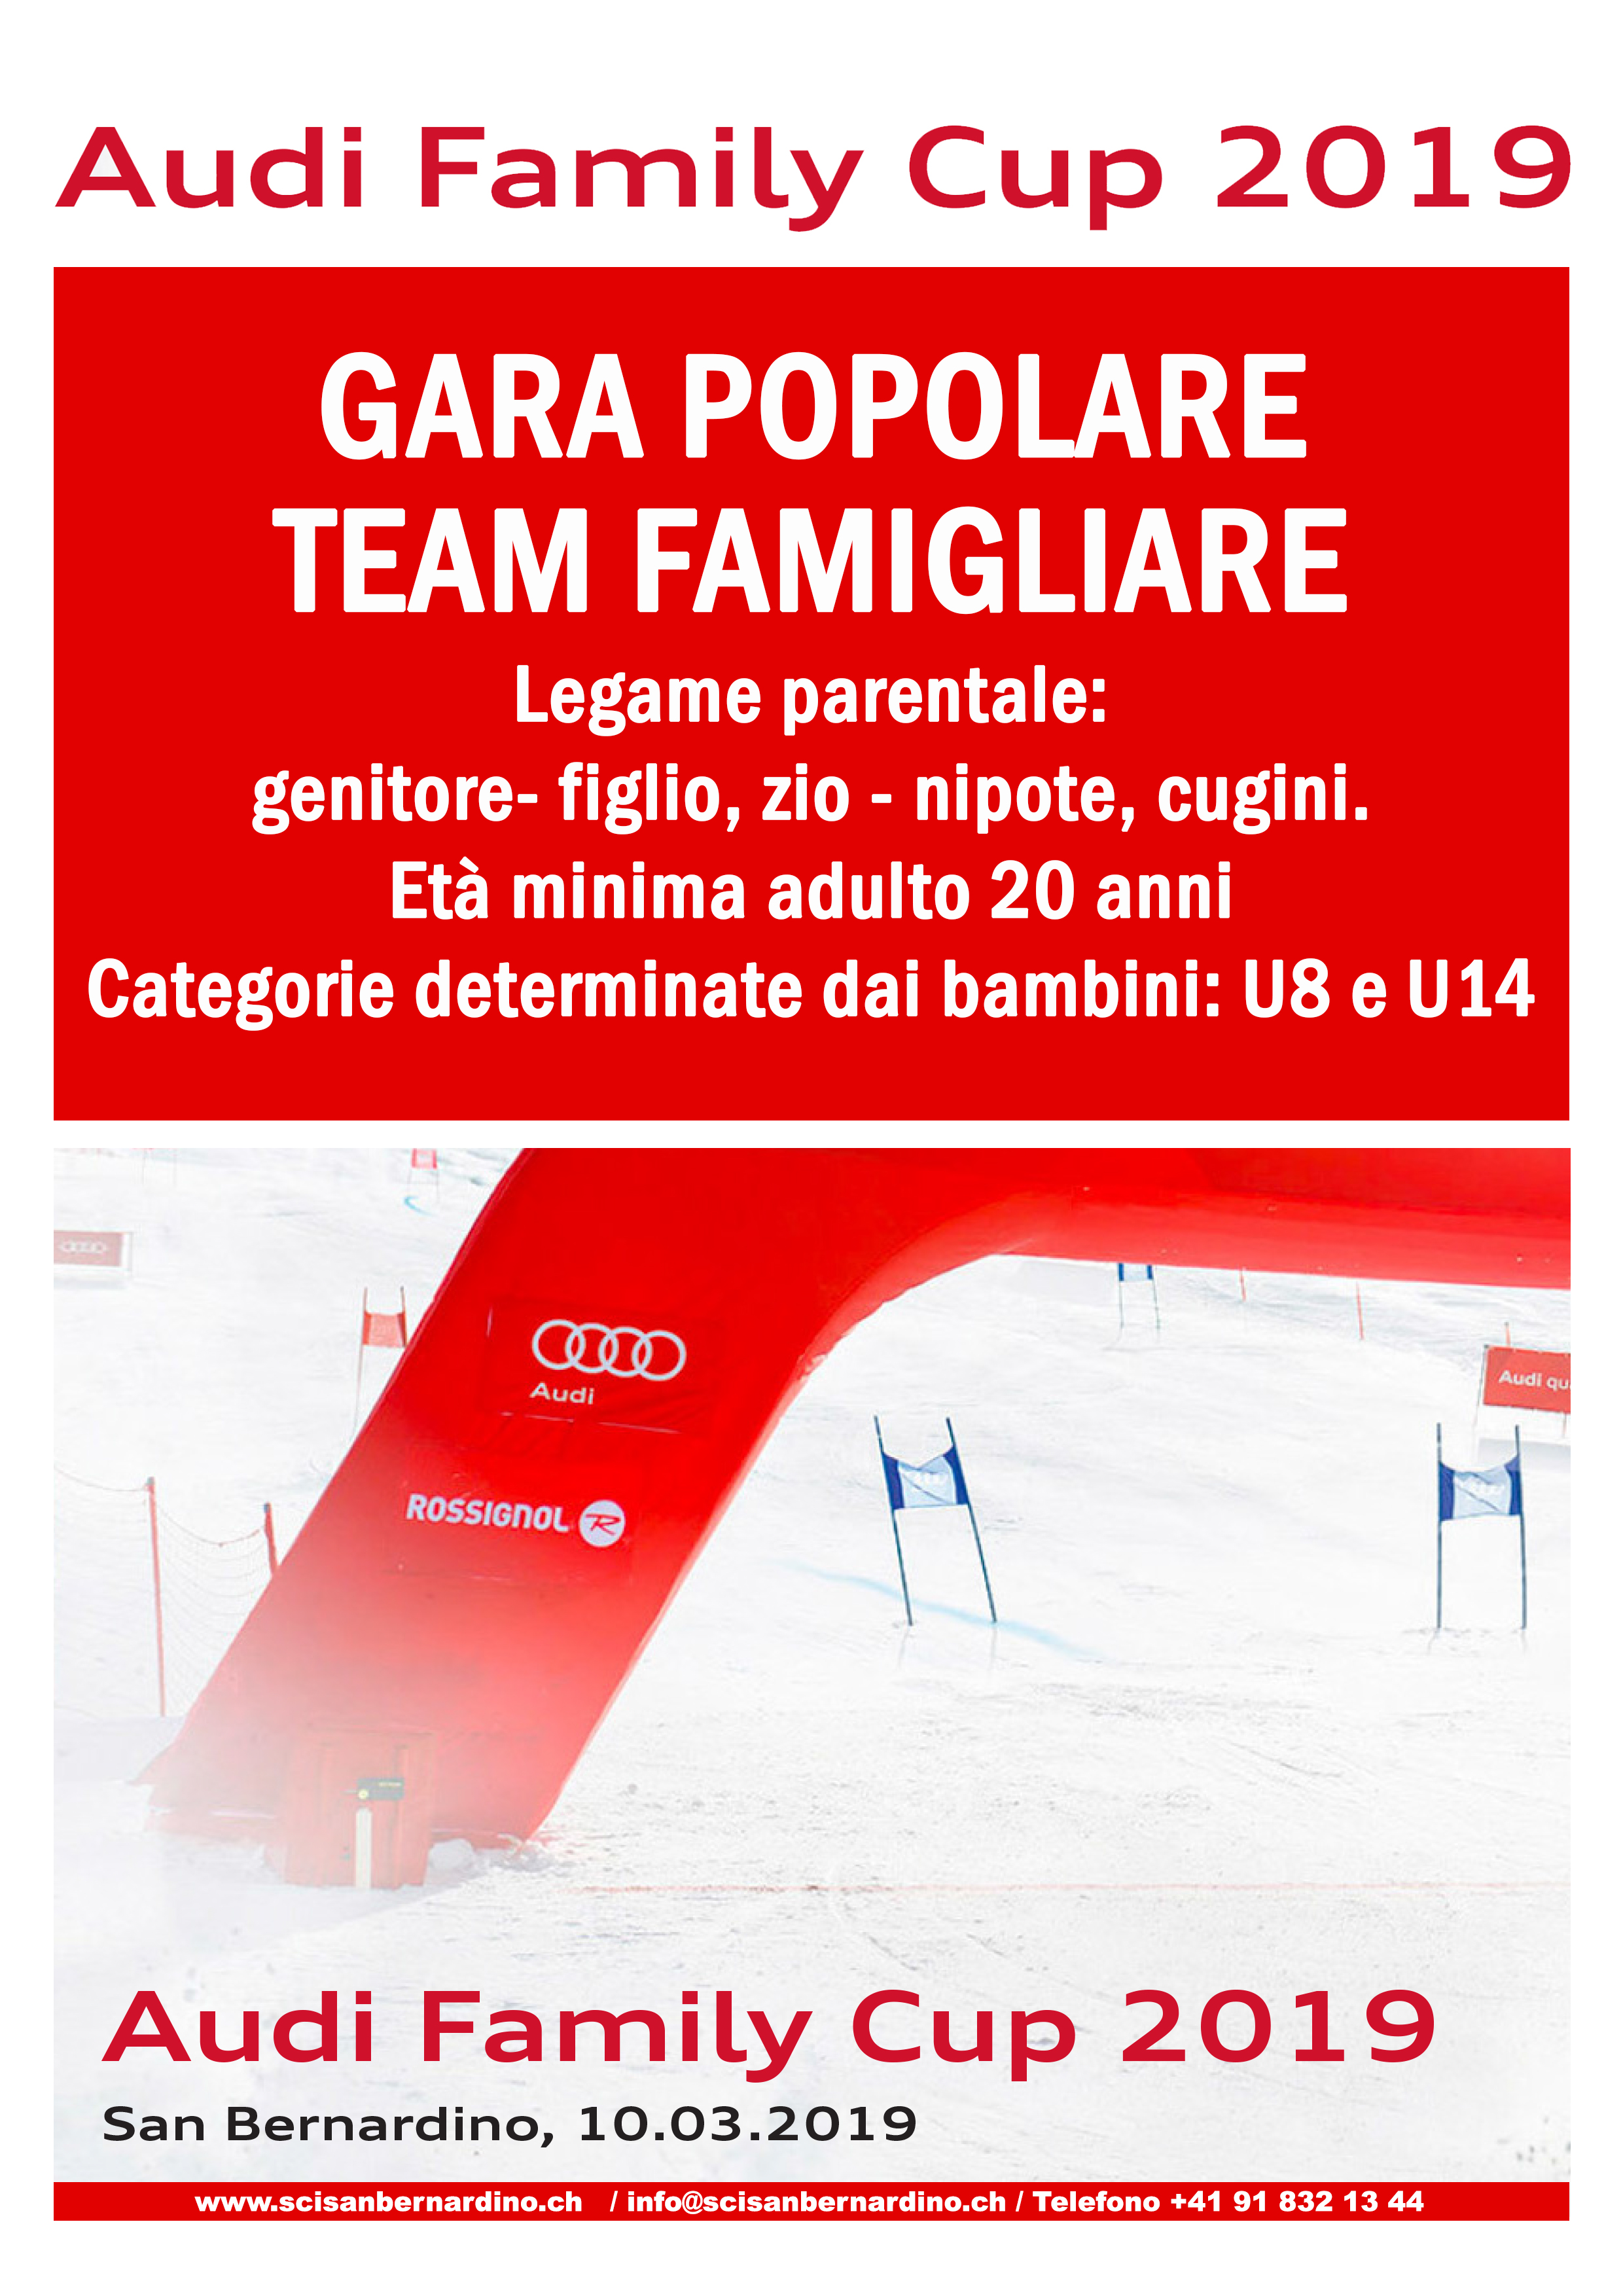 10.03.2019 Audi Family Cup 2019 / Gara popolare team famigliare